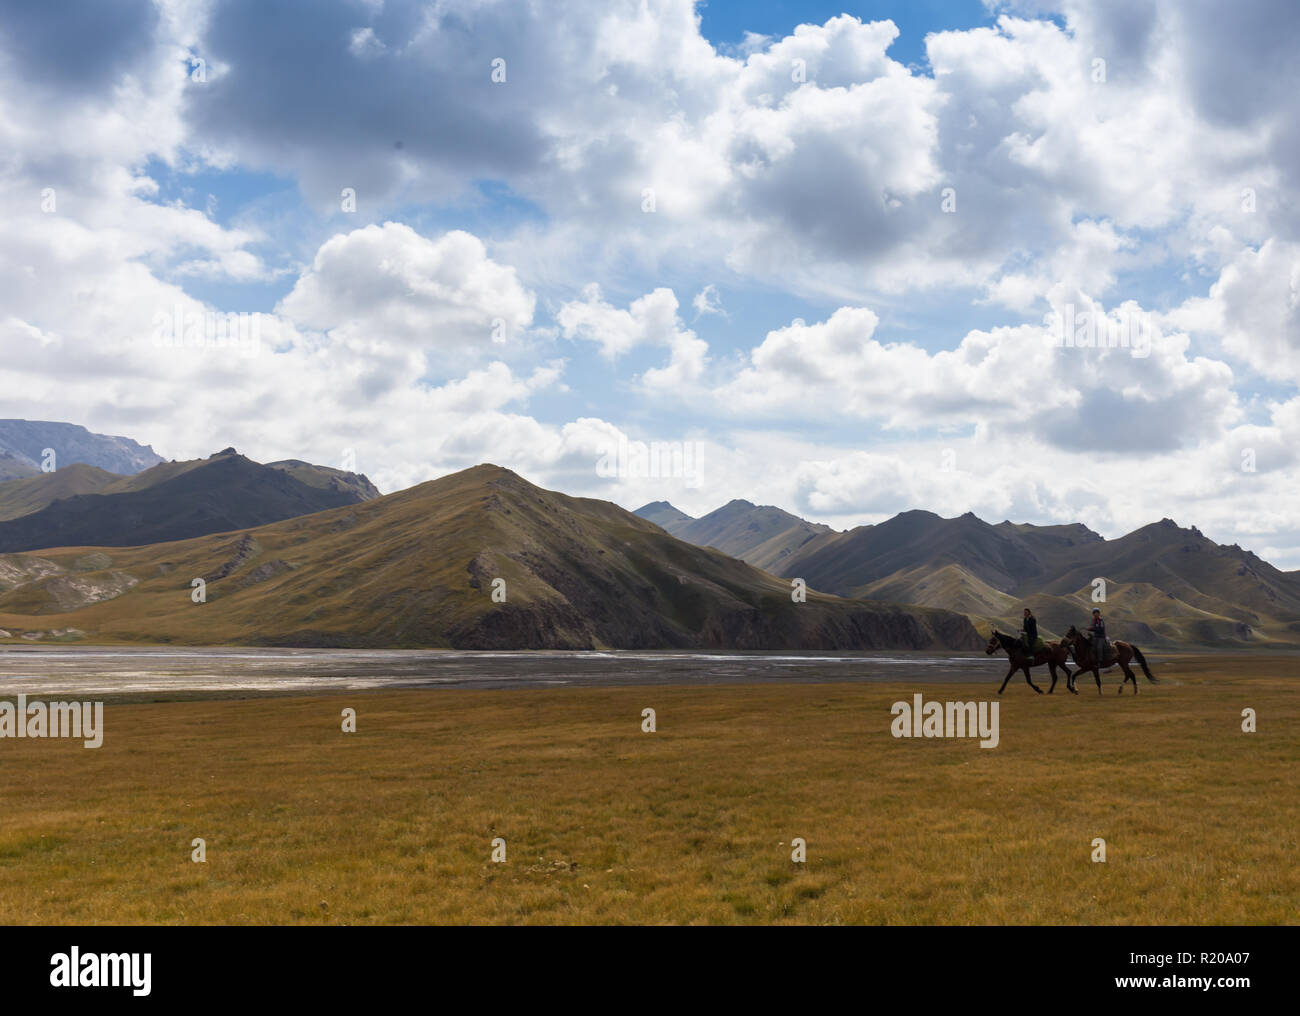 De BAYAN ULGII, MONGOLIE - APREL 10 : jeune garçon monter à cheval autour du village de Sagsai sur l'ouest de la Mongolie en 2016, 10 Aprel Bayan-Ulgii, Mongolie Banque D'Images